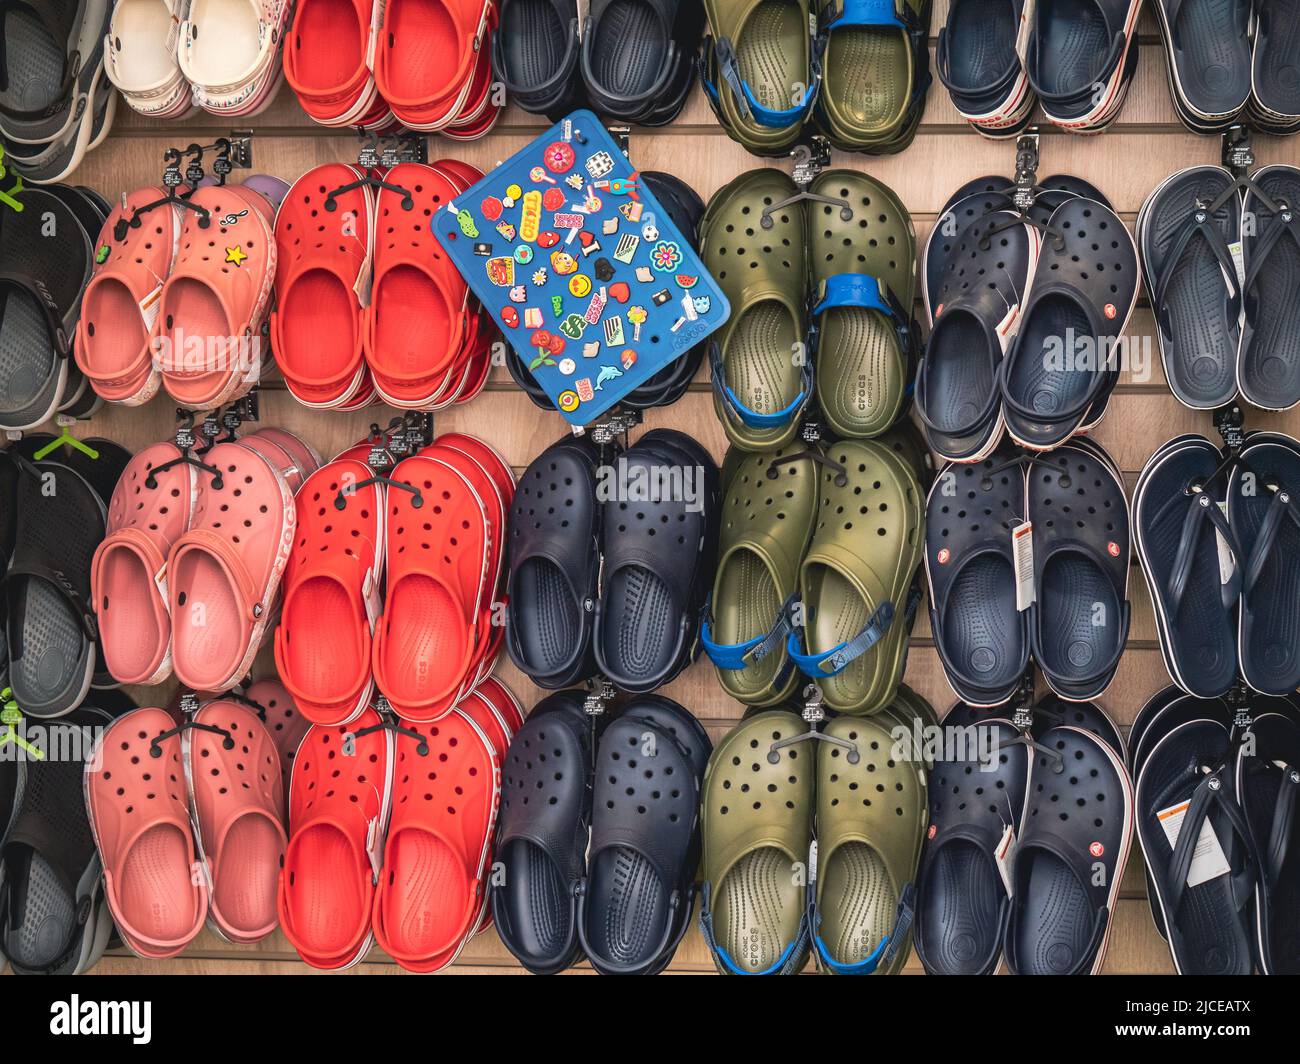 Moskau, Russland - Mai 2022 : Crocs Clogs im Geschäft zu verkaufen. Bequeme Schuhe. Crocs Inc. Ist ein amerikanisches Unternehmen mit Sitz in NIWOT, Colorado, das Schuhe vertreibt und herstellt. Stockfoto